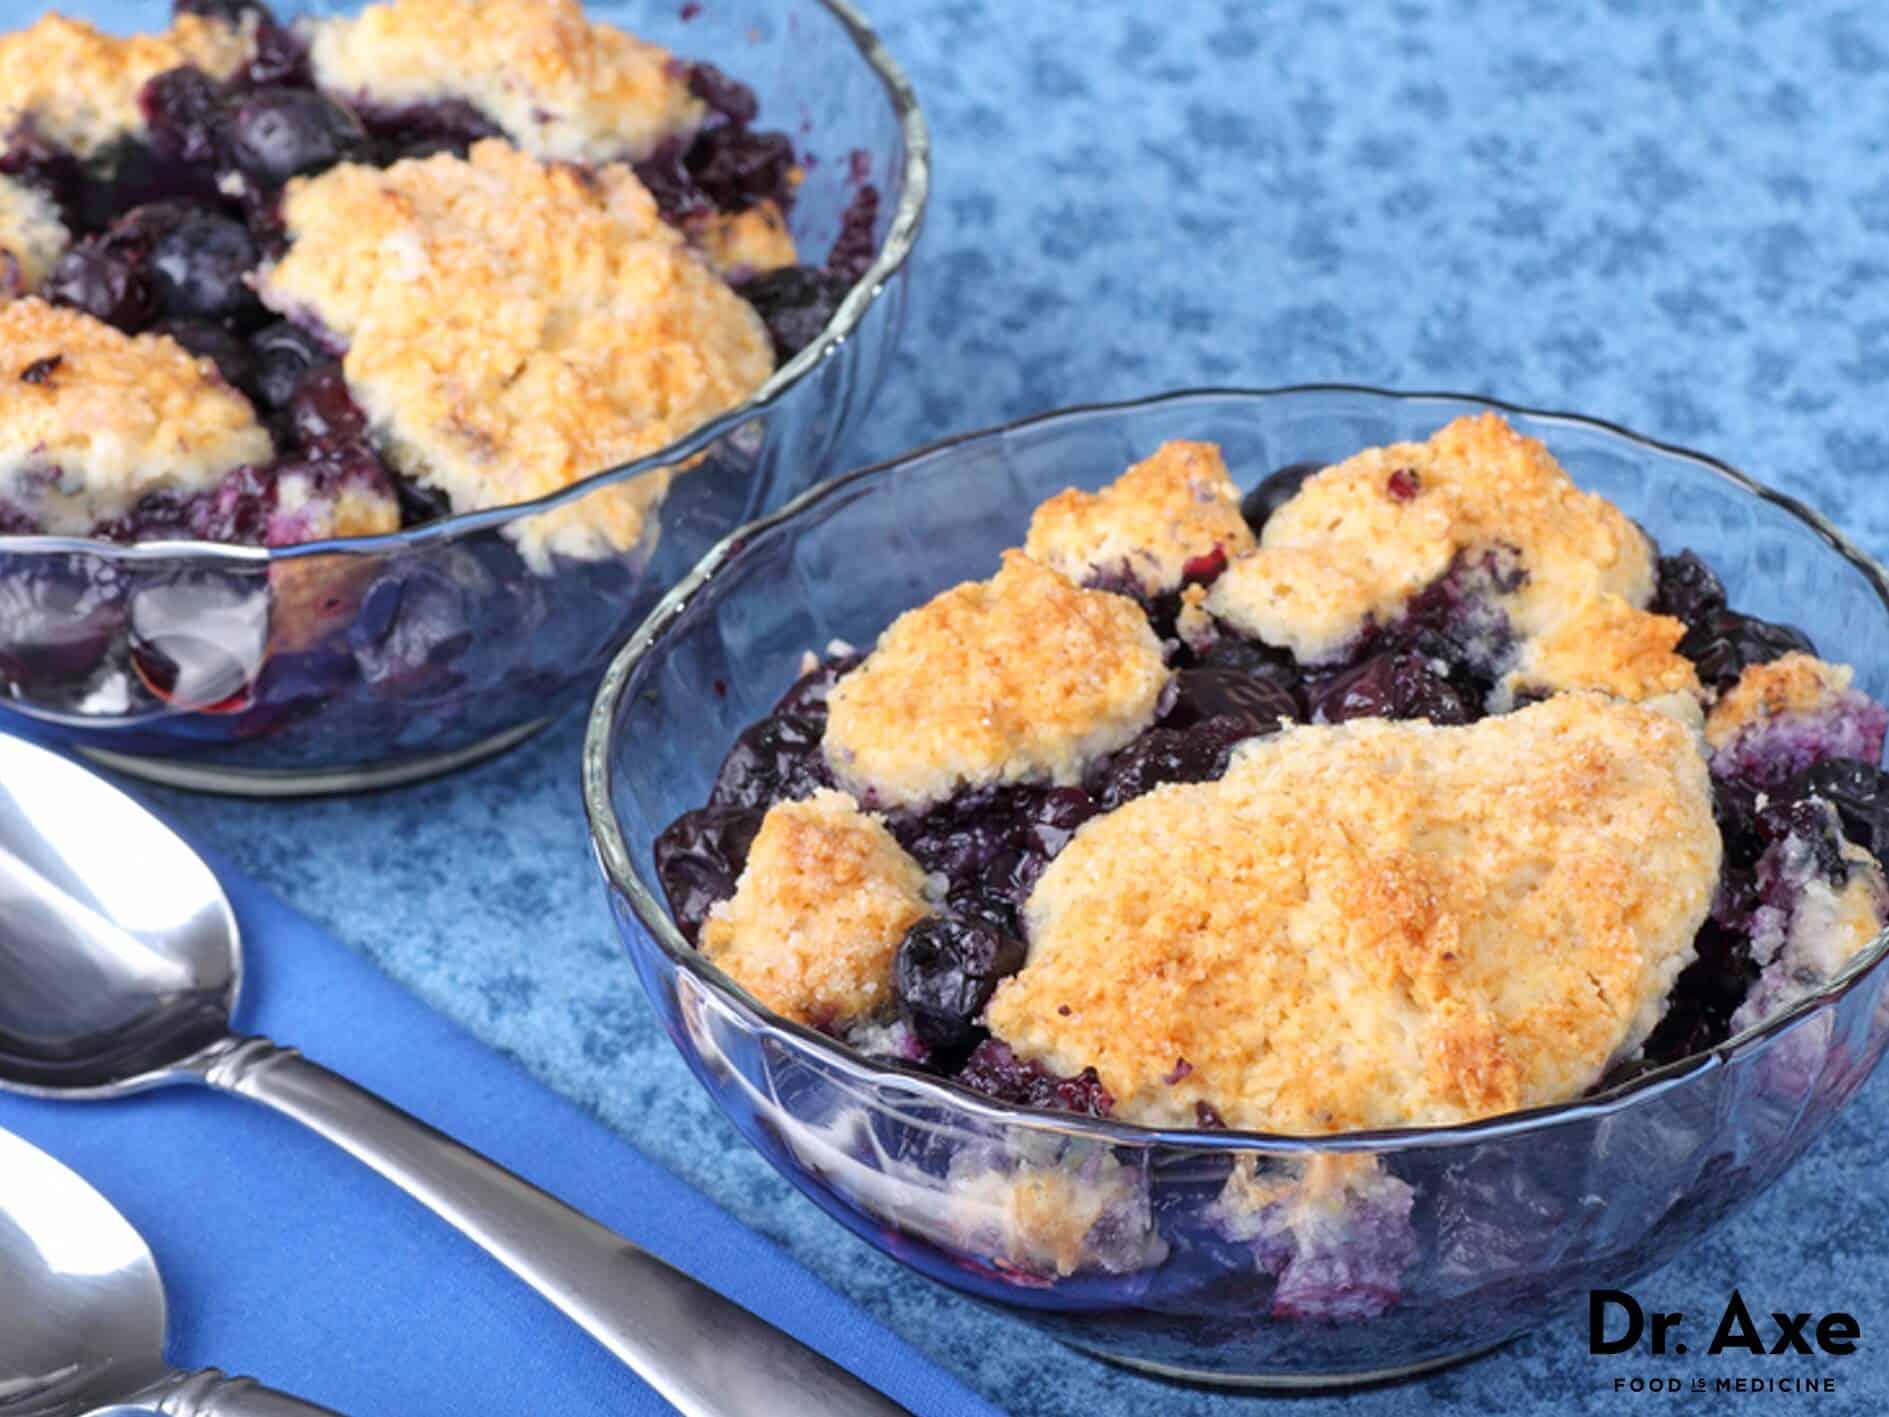 Healthy blueberry cobbler recipe - Dr. Axe